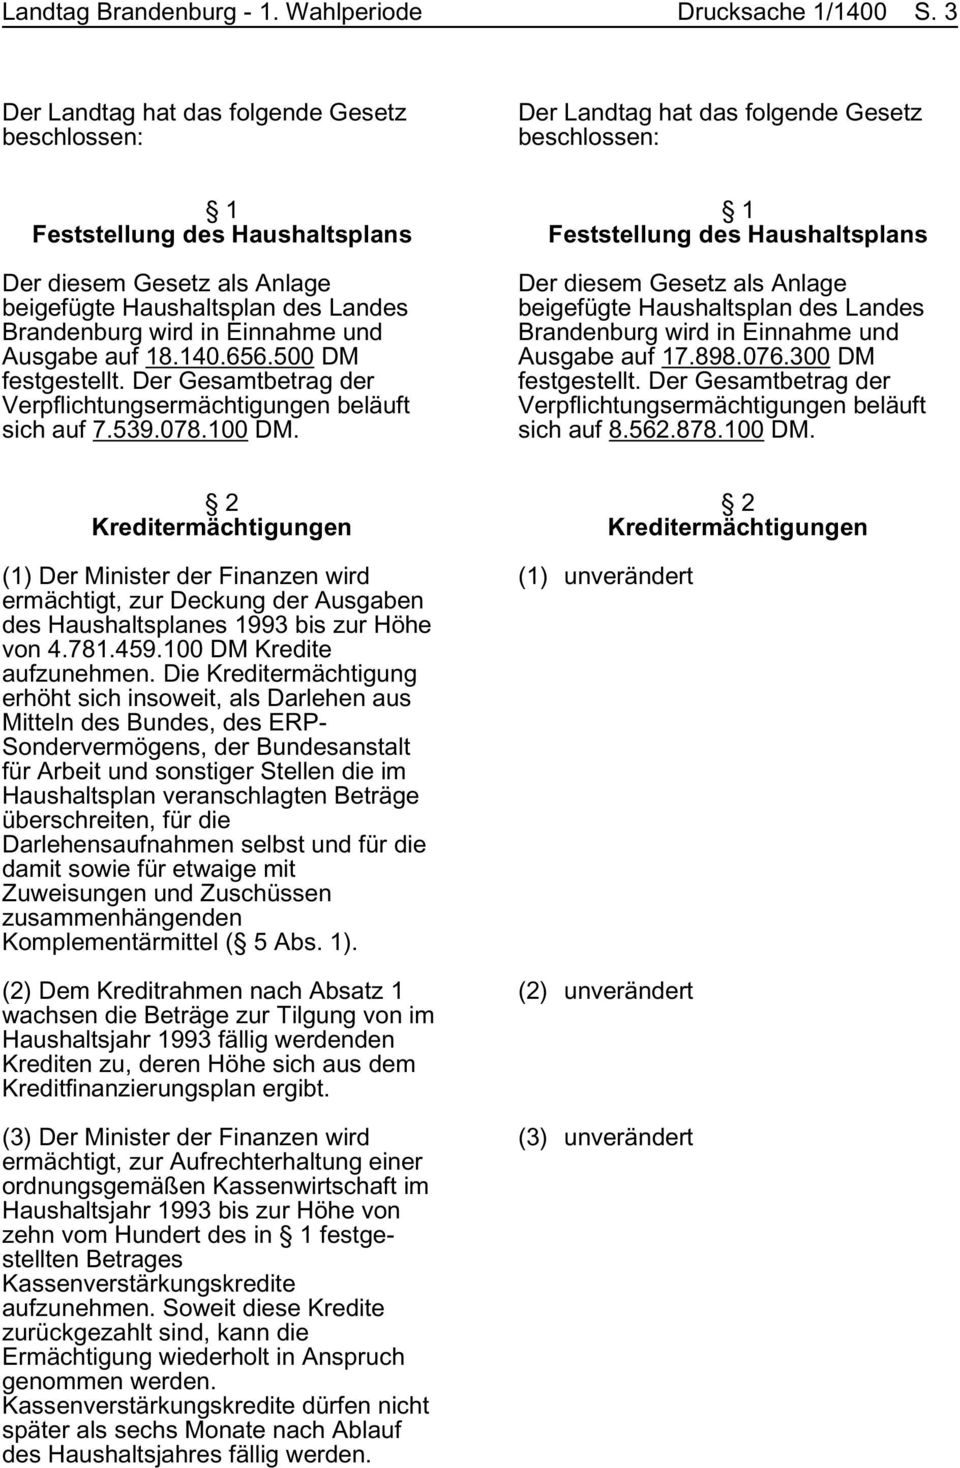 Brandenburg wird in Einnahme und Ausgabe auf 18.140.656.500 DM festgestellt. Der Gesamtbetrag der Verpflichtungsermächtigungen beläuft sich auf 7.539.078.100 DM.